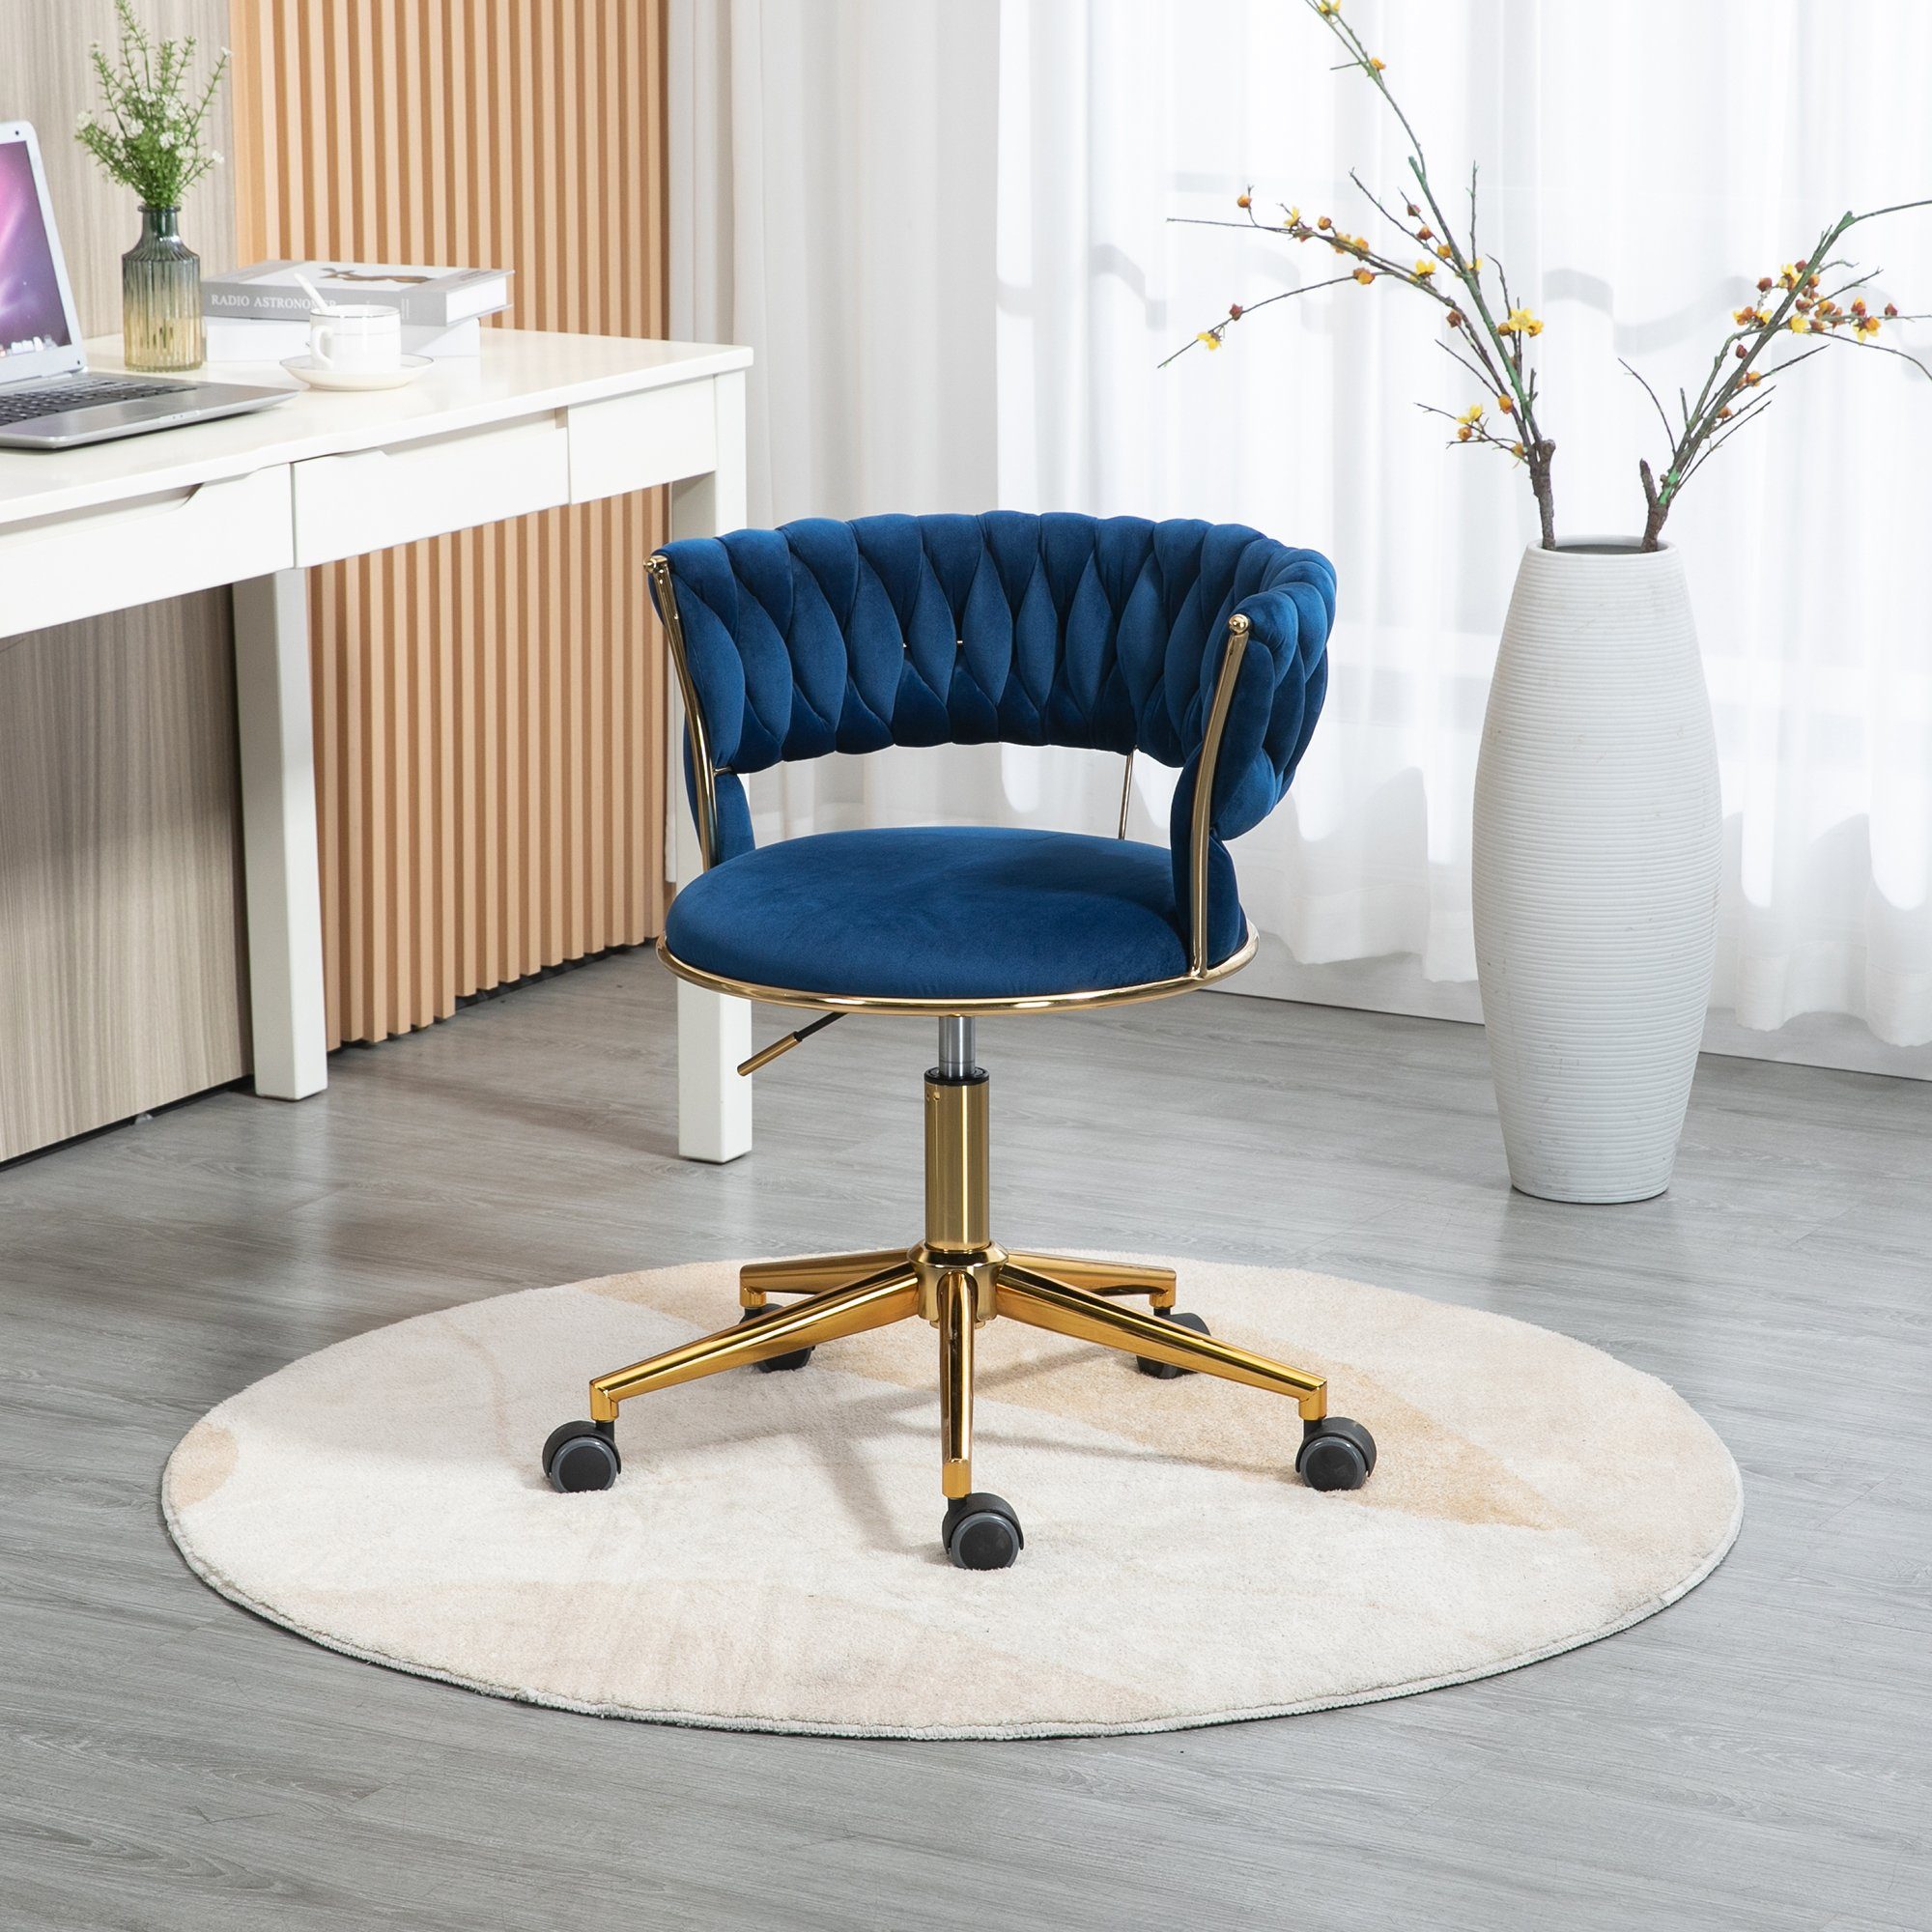 goldene Odikalo drehbar Drehstuhl Blau mehrfarbig Freizeit Bürostuhl Make-up Samt Beine 360°